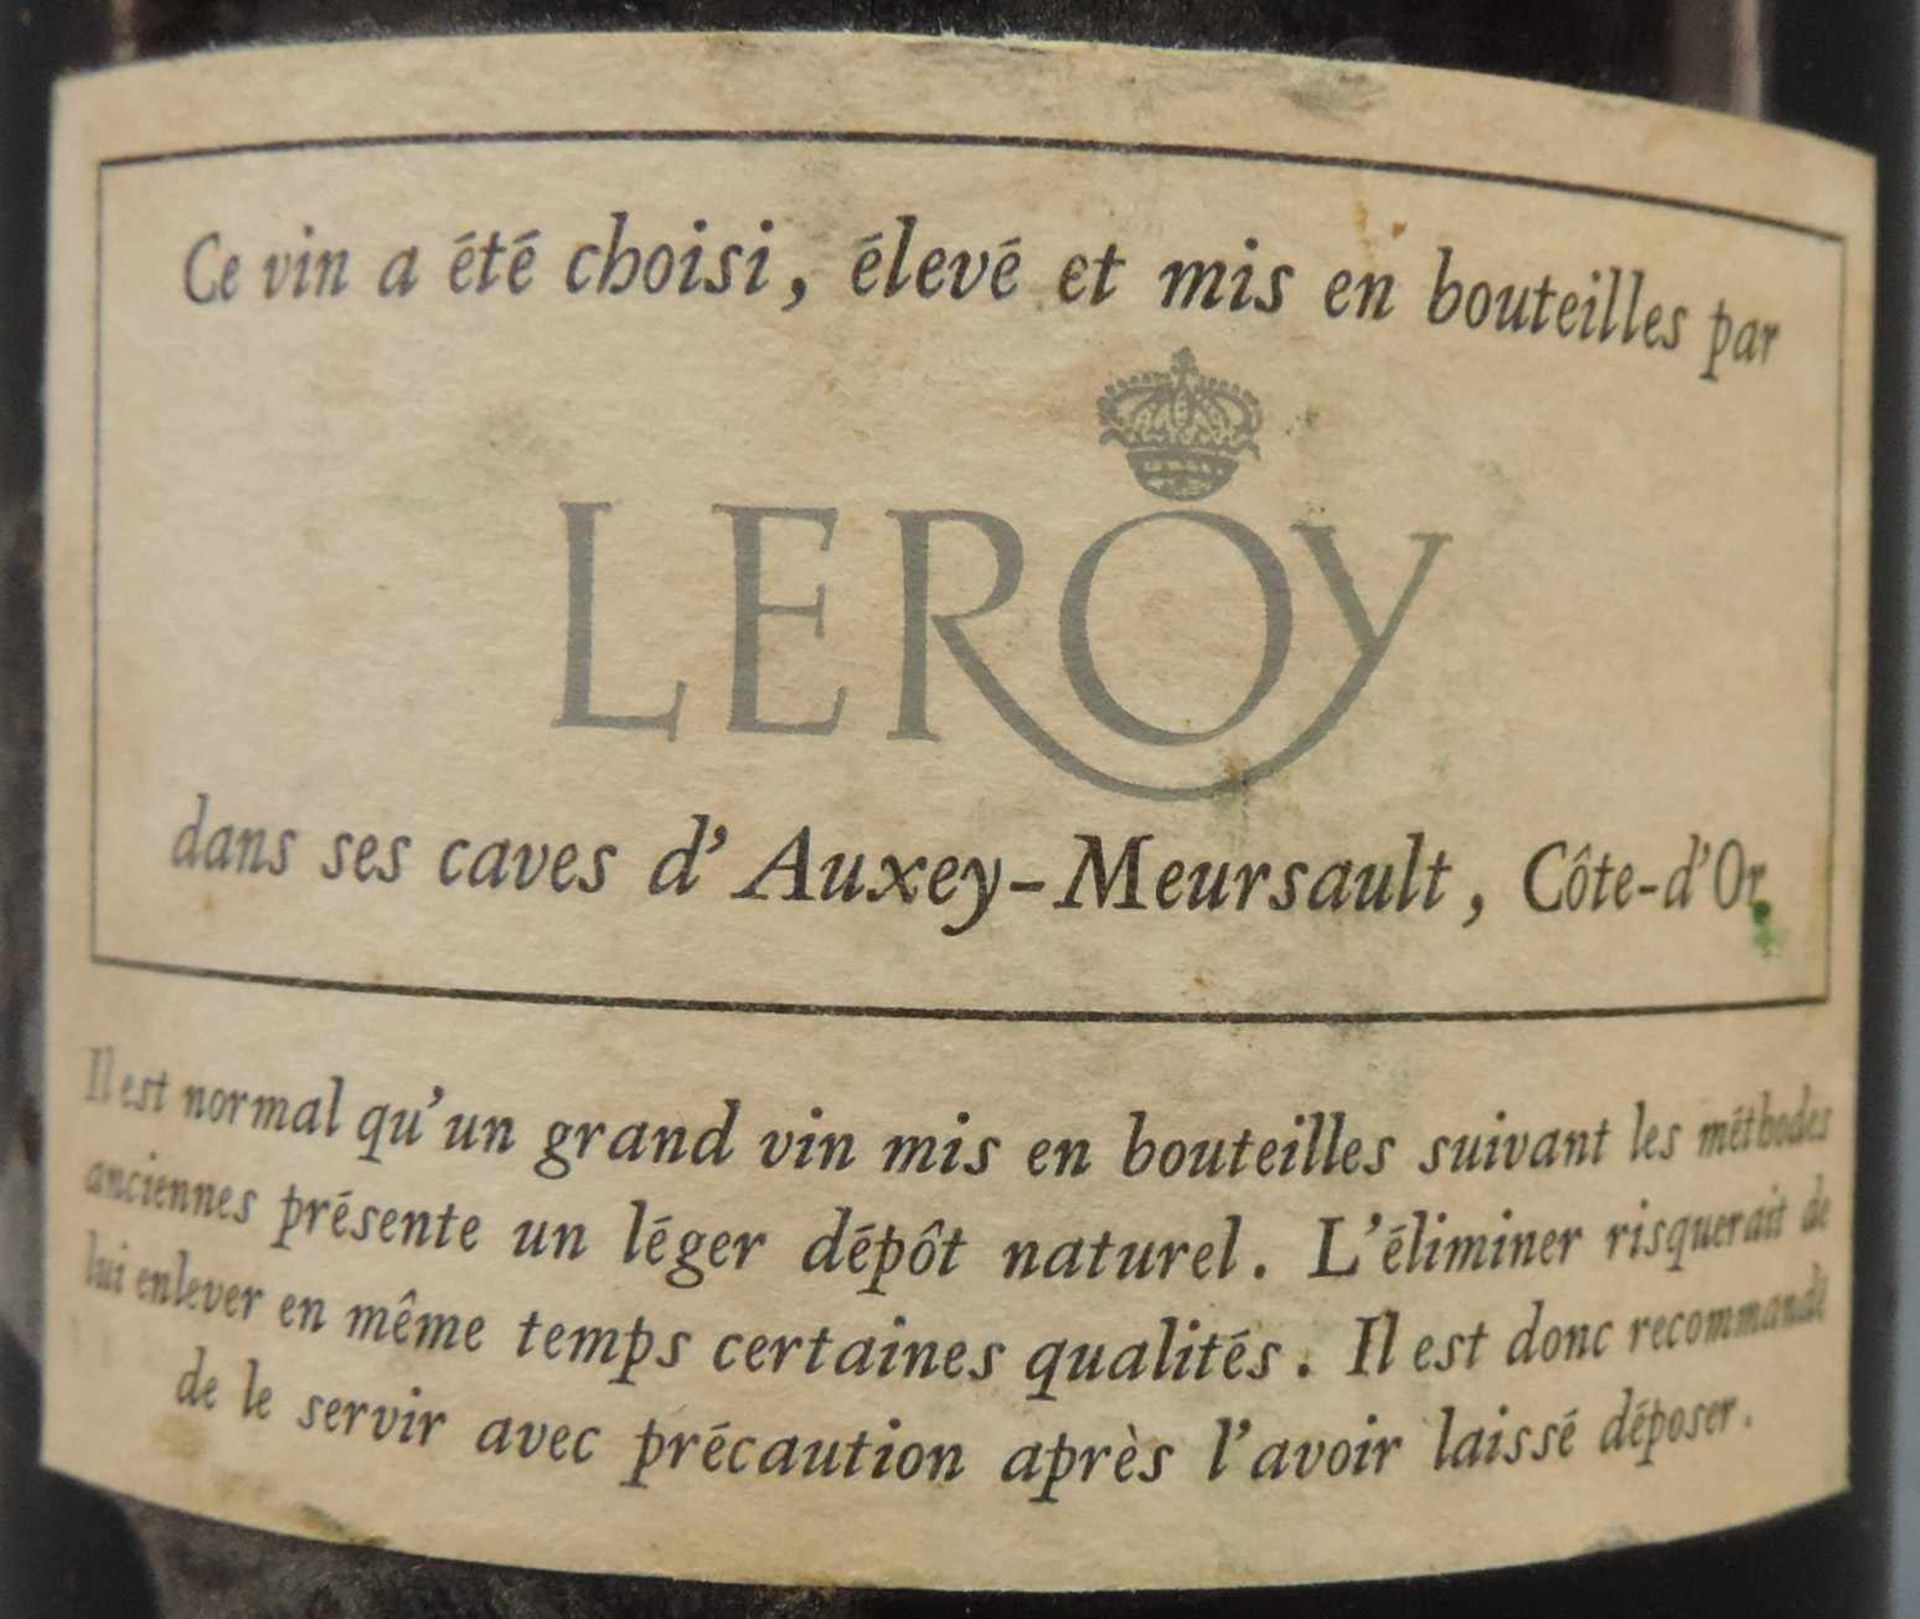 1961 Auvenay, Bourgogne AC, de LEROY. Eine ganze Flasche. Rotwein. Frankreich. Burgund. 1961 - Image 5 of 7